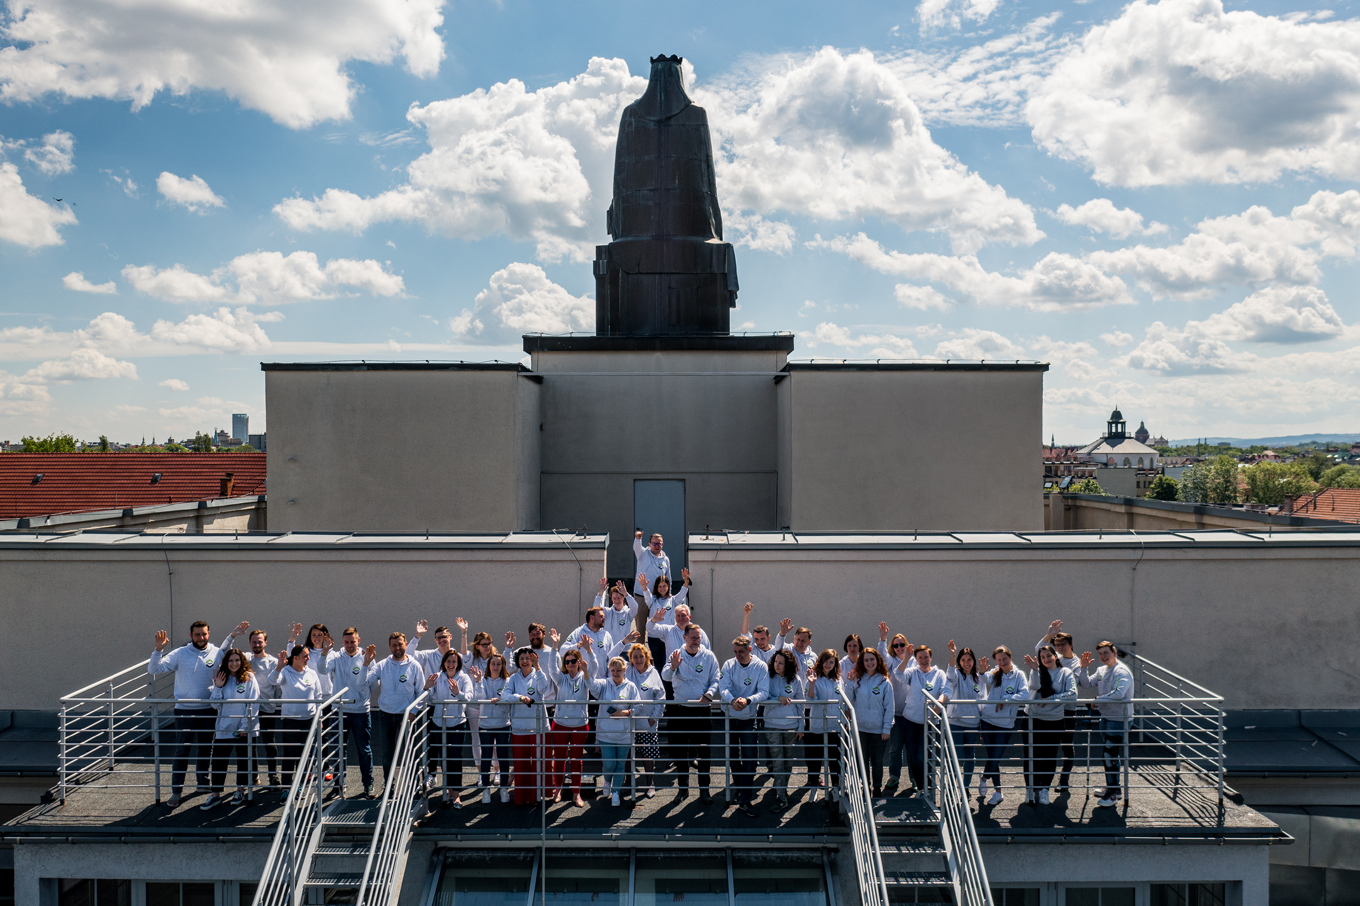 Pracownicy WILiGZ stoją na dachu budynku ubrani w jednolite szare bluzy wydziałowe i machają ręką na powitanie. W tle widać niebo oraz panorame Krakowa.